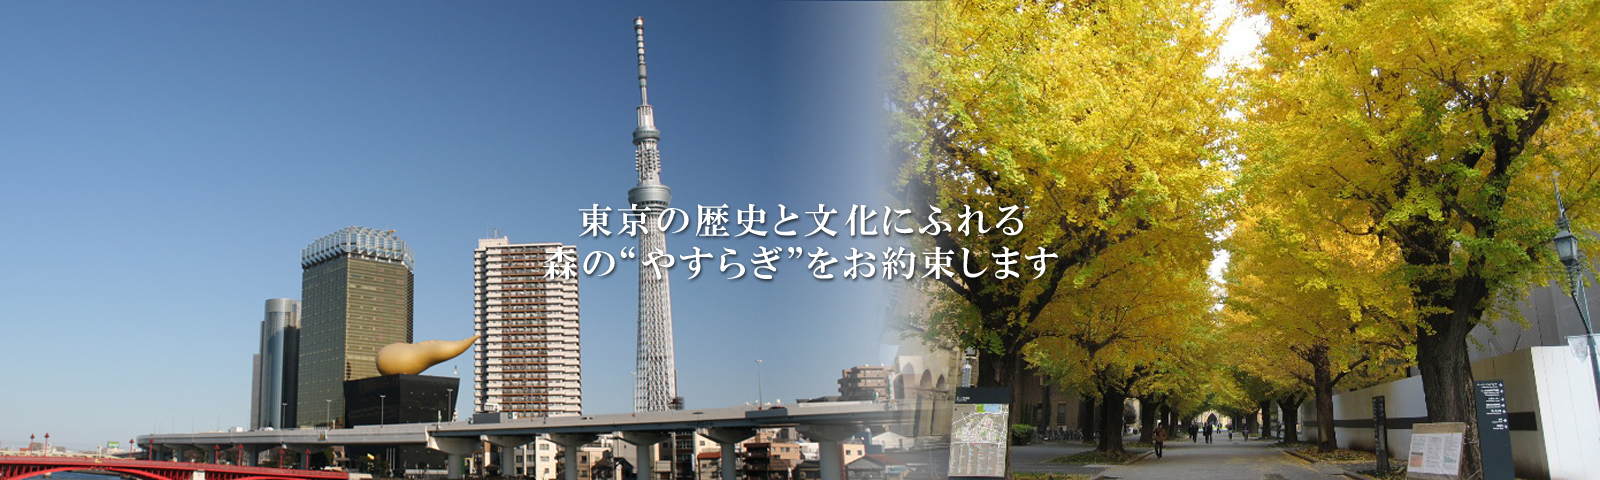 東京の歴史と文化にふれる森の”やすらぎ”をお約束します